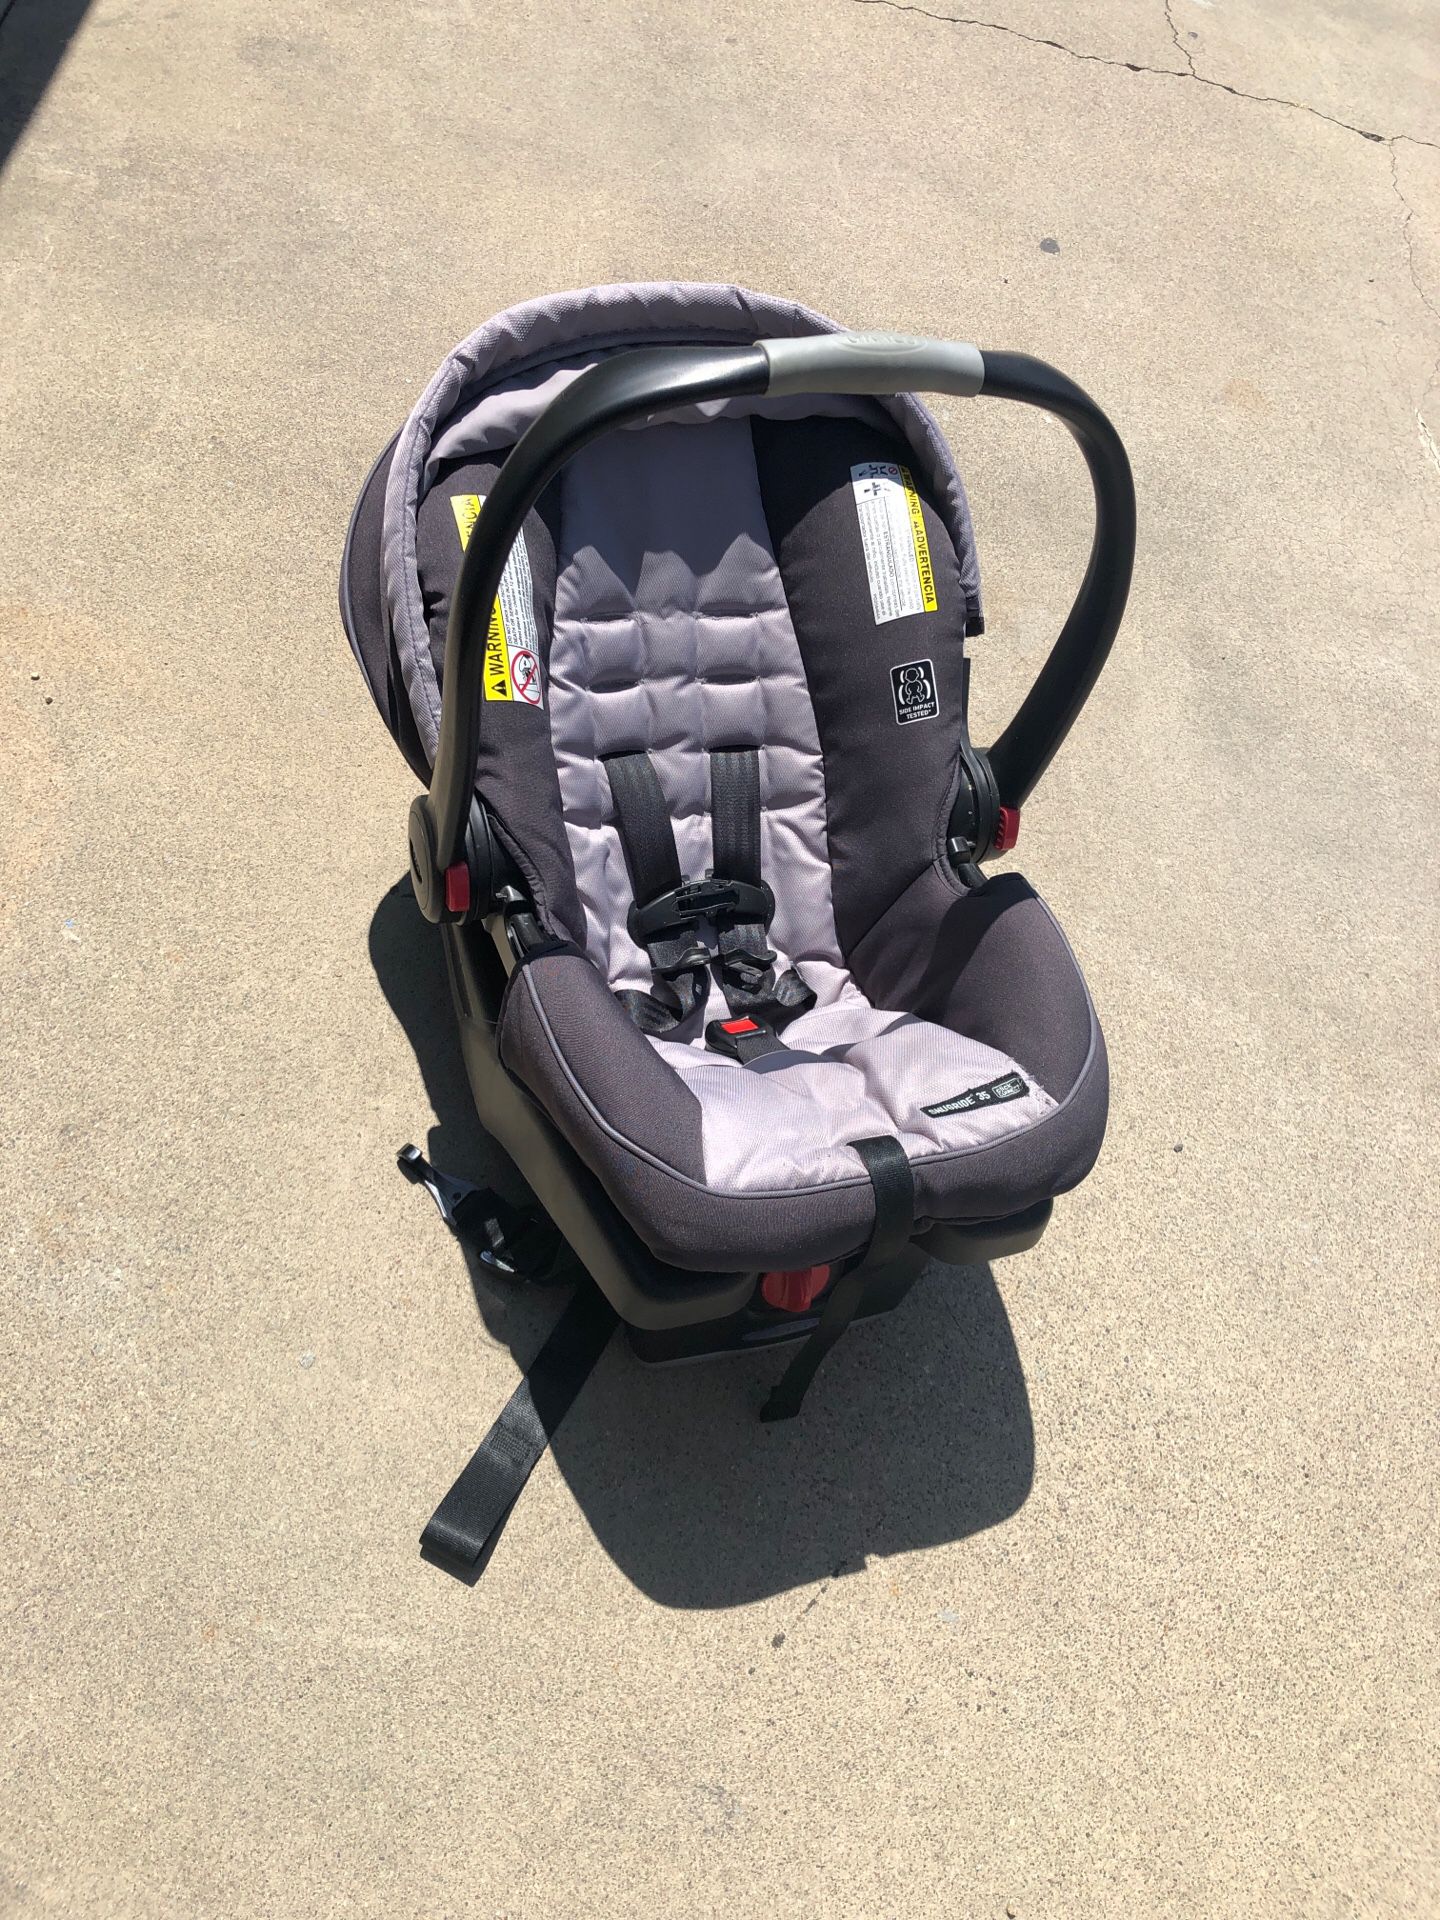 2017 Graco snugride 35 infant car seat